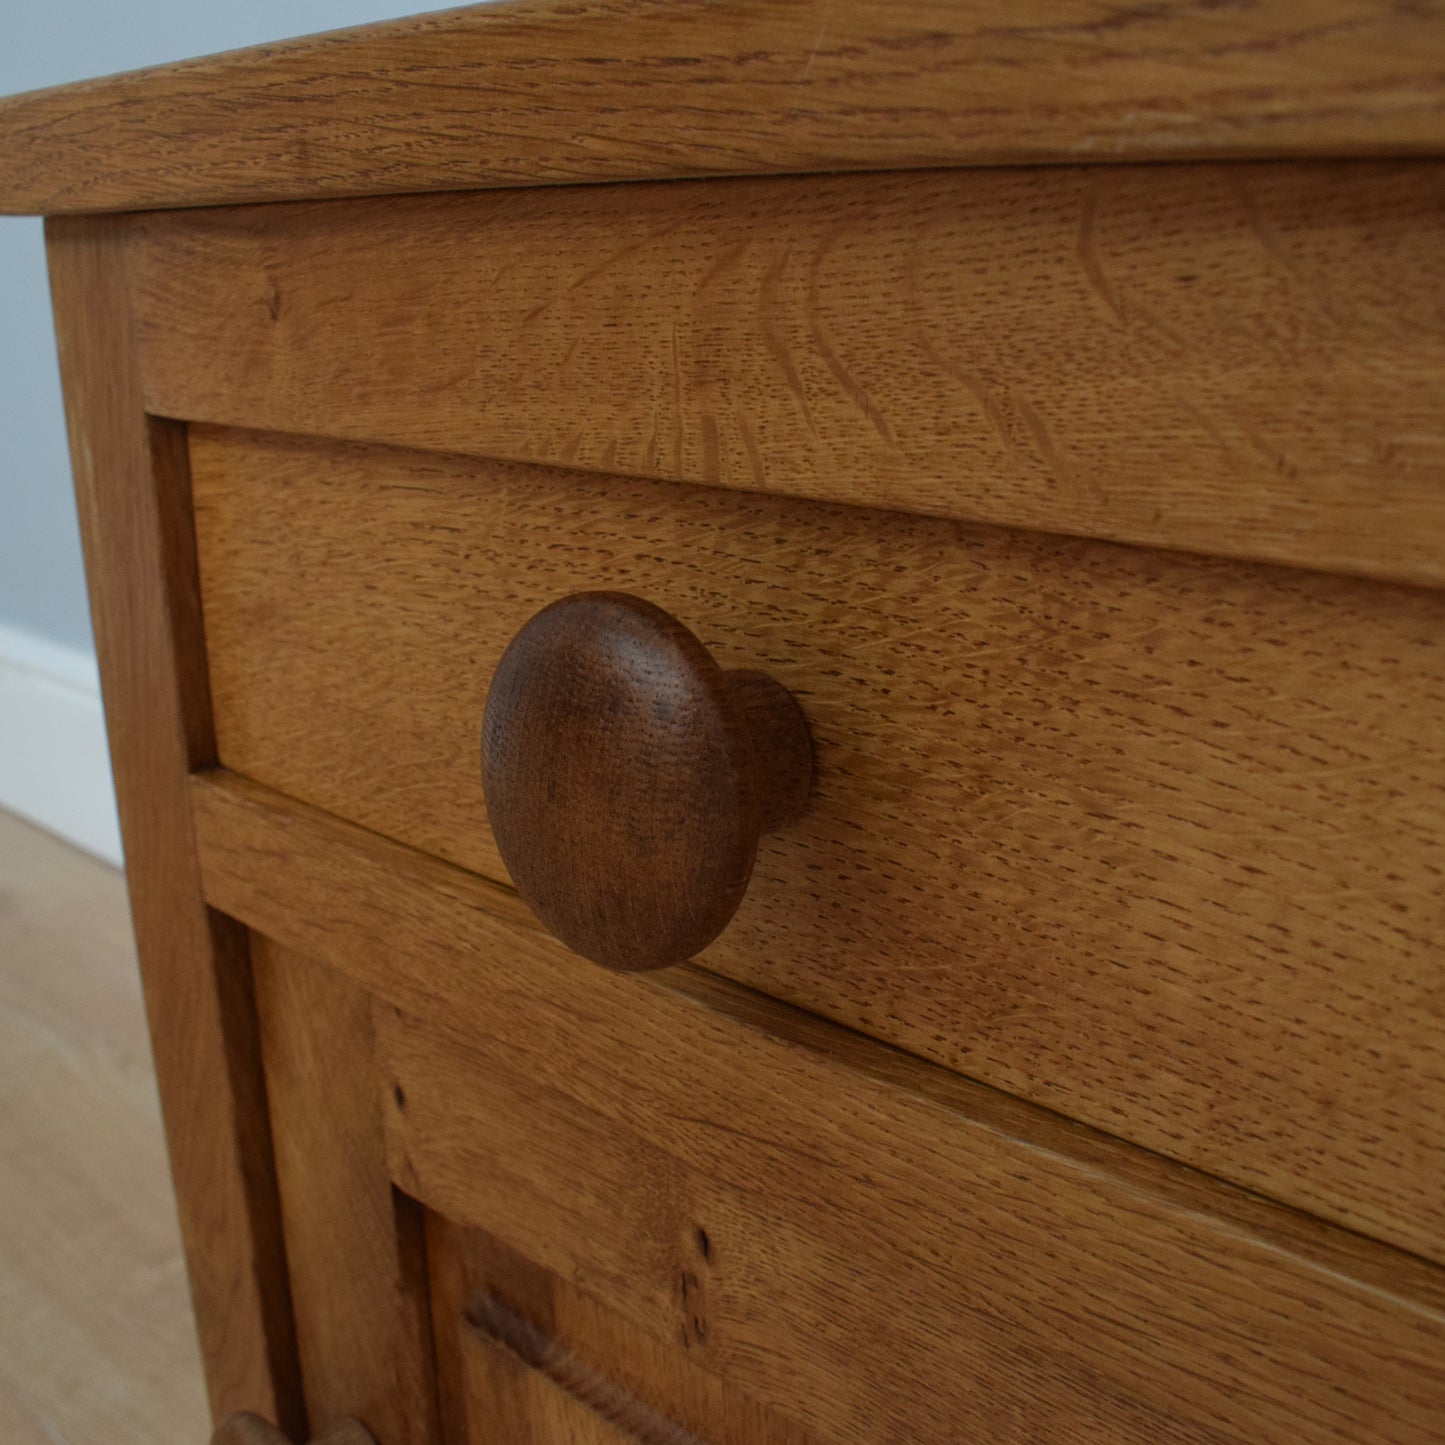 Oak Bedside Cabinet